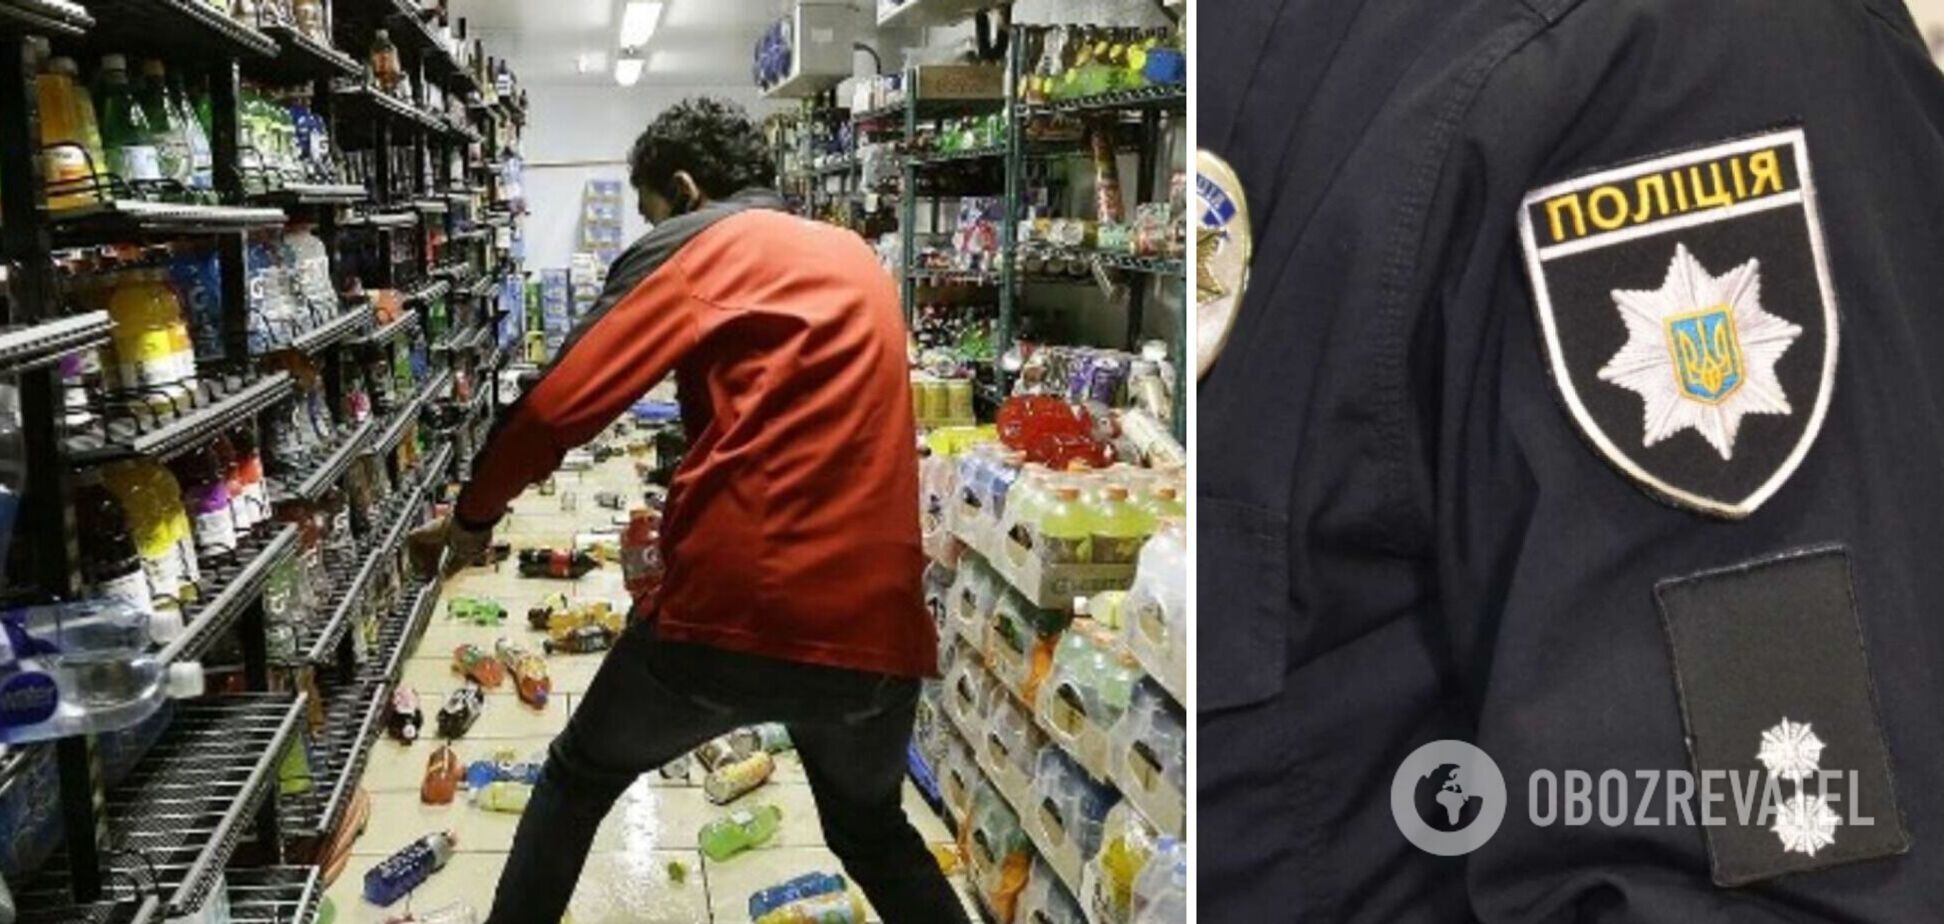 В Одессе мужчина устроил дебош в магазине из-за требования надеть маску: на место вызвали полицию. Видео